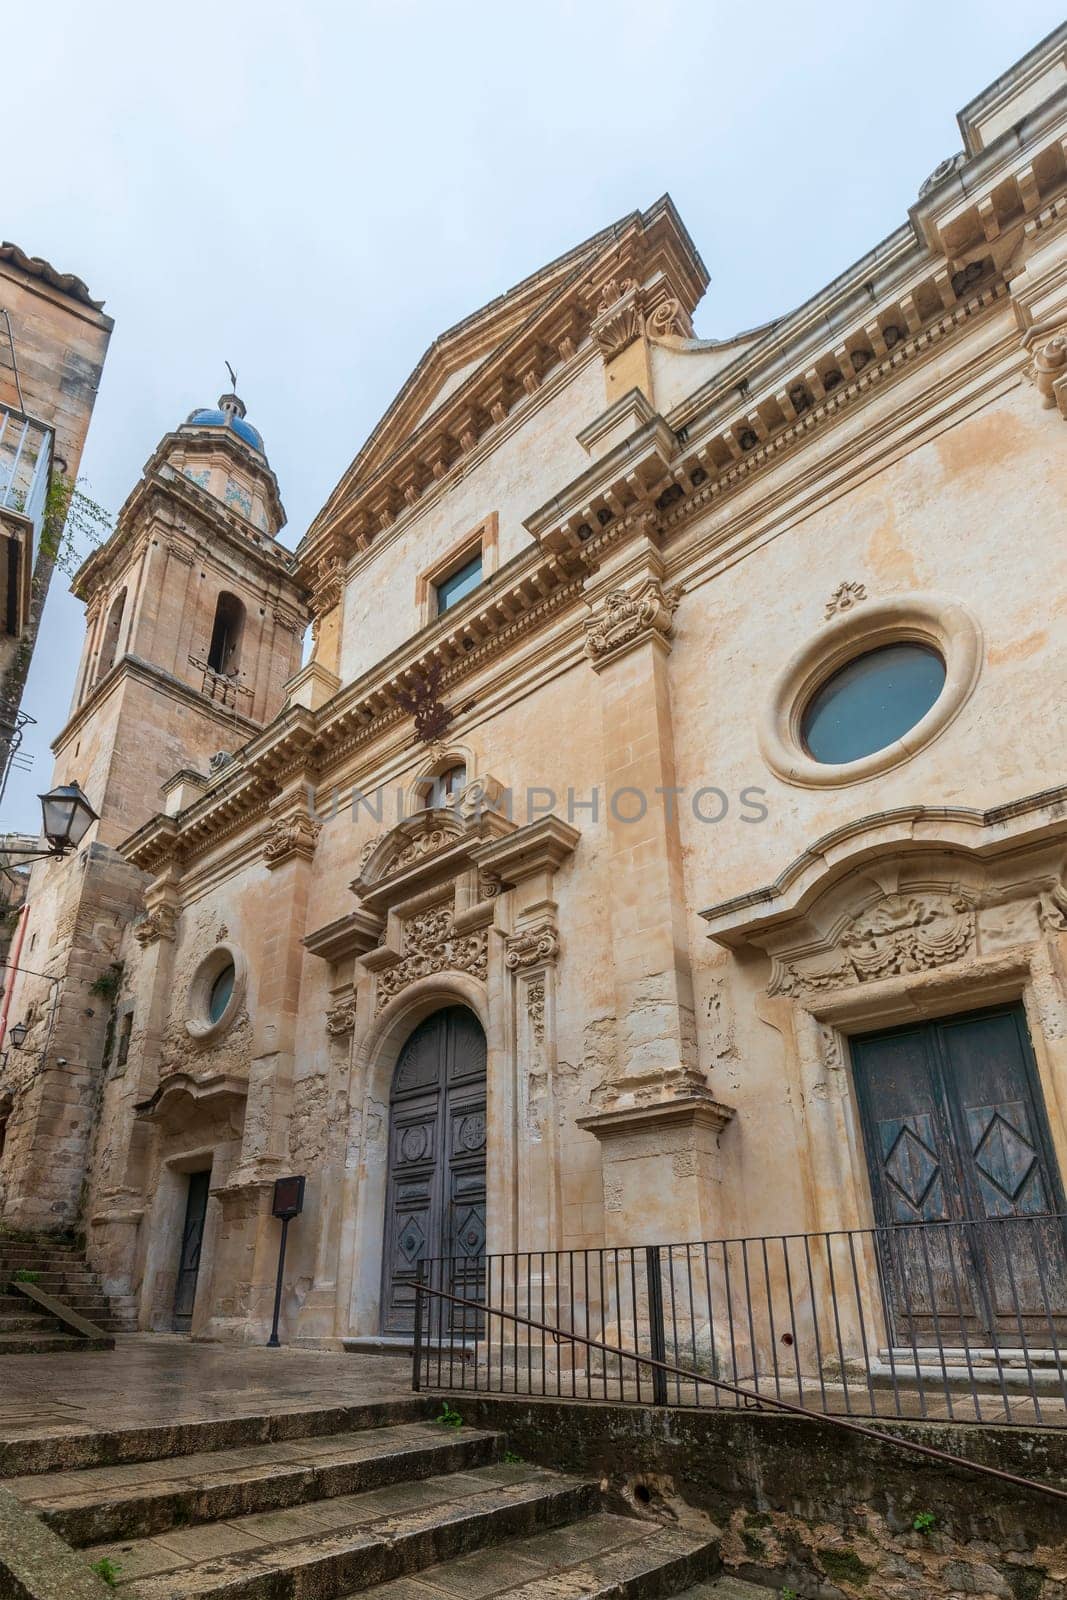 Church Santa Maria dell'Itria a Ragusa ibla, Sicily, Italy by EdVal